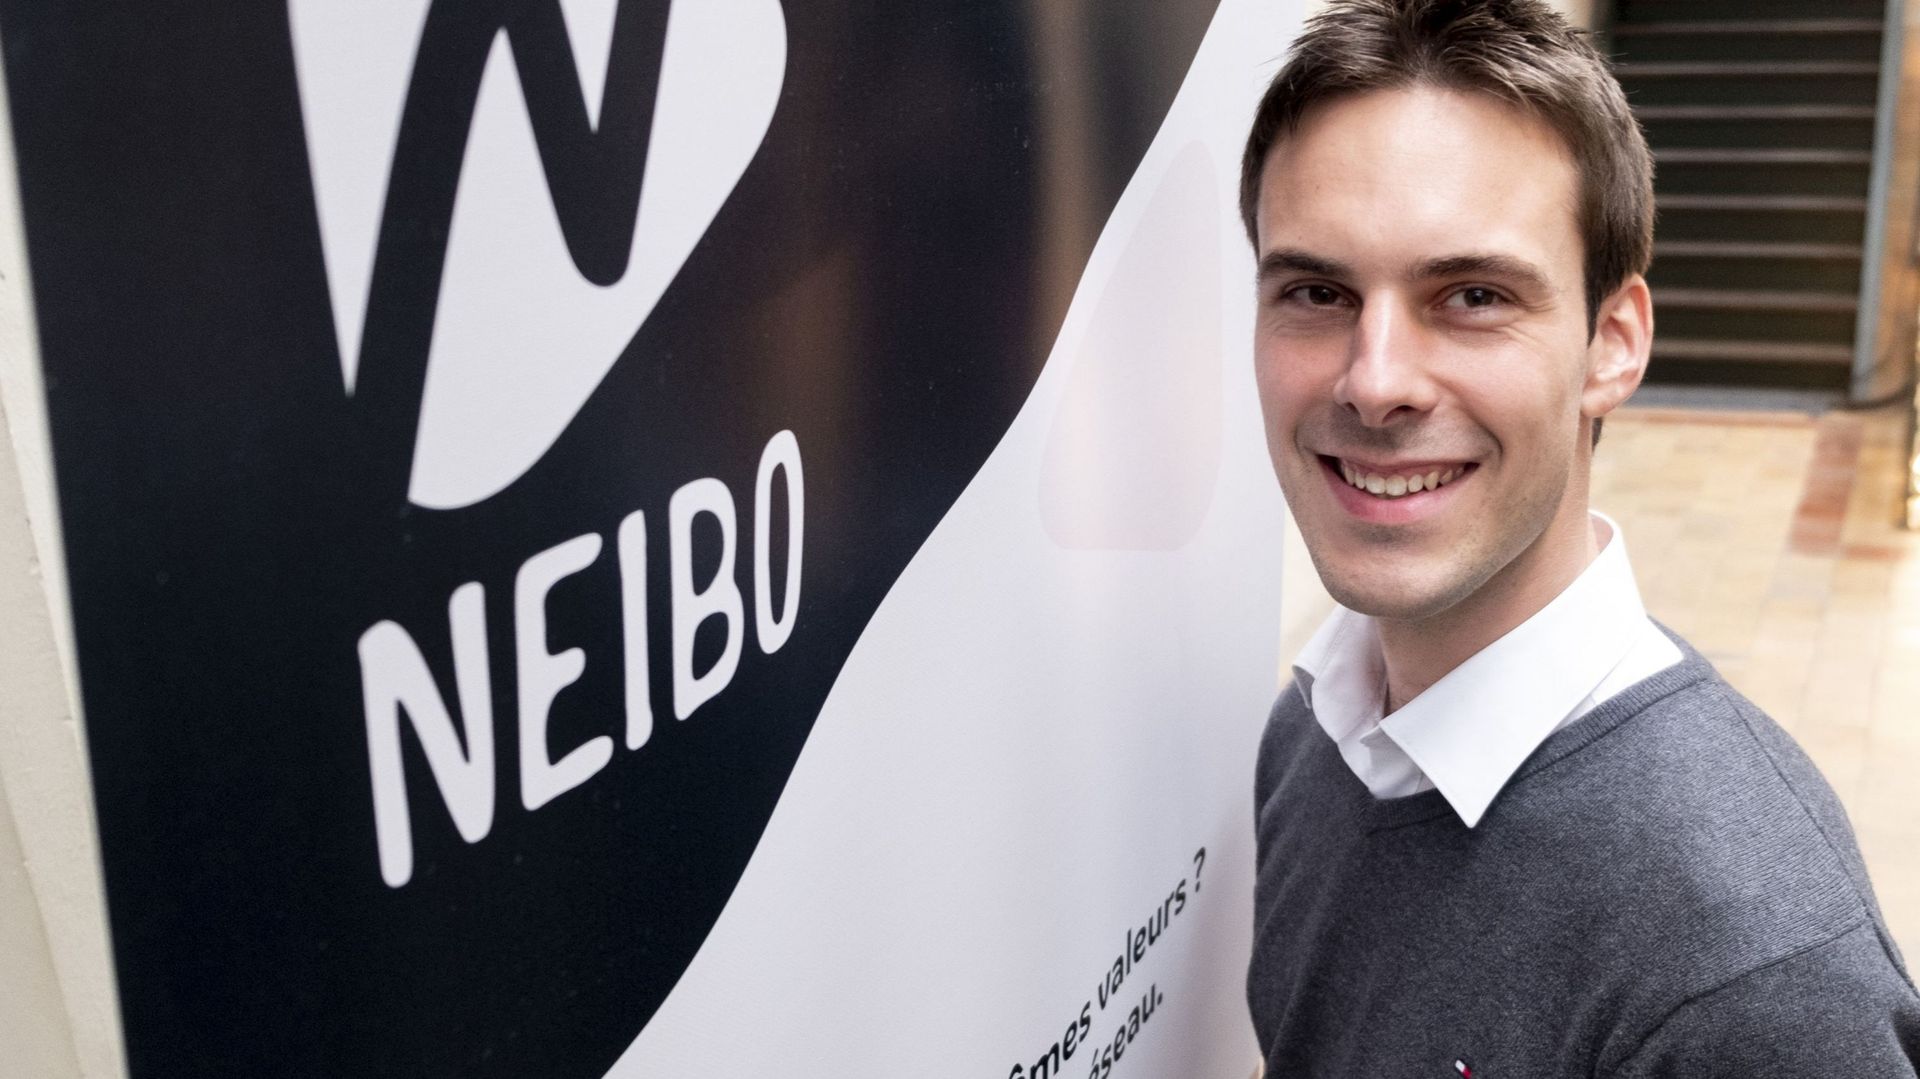 Lancée en octobre 2018, Neibo vient de lancer ses premiers abonnements de téléphonie mobile à destination de ses 2300 coopérateurs